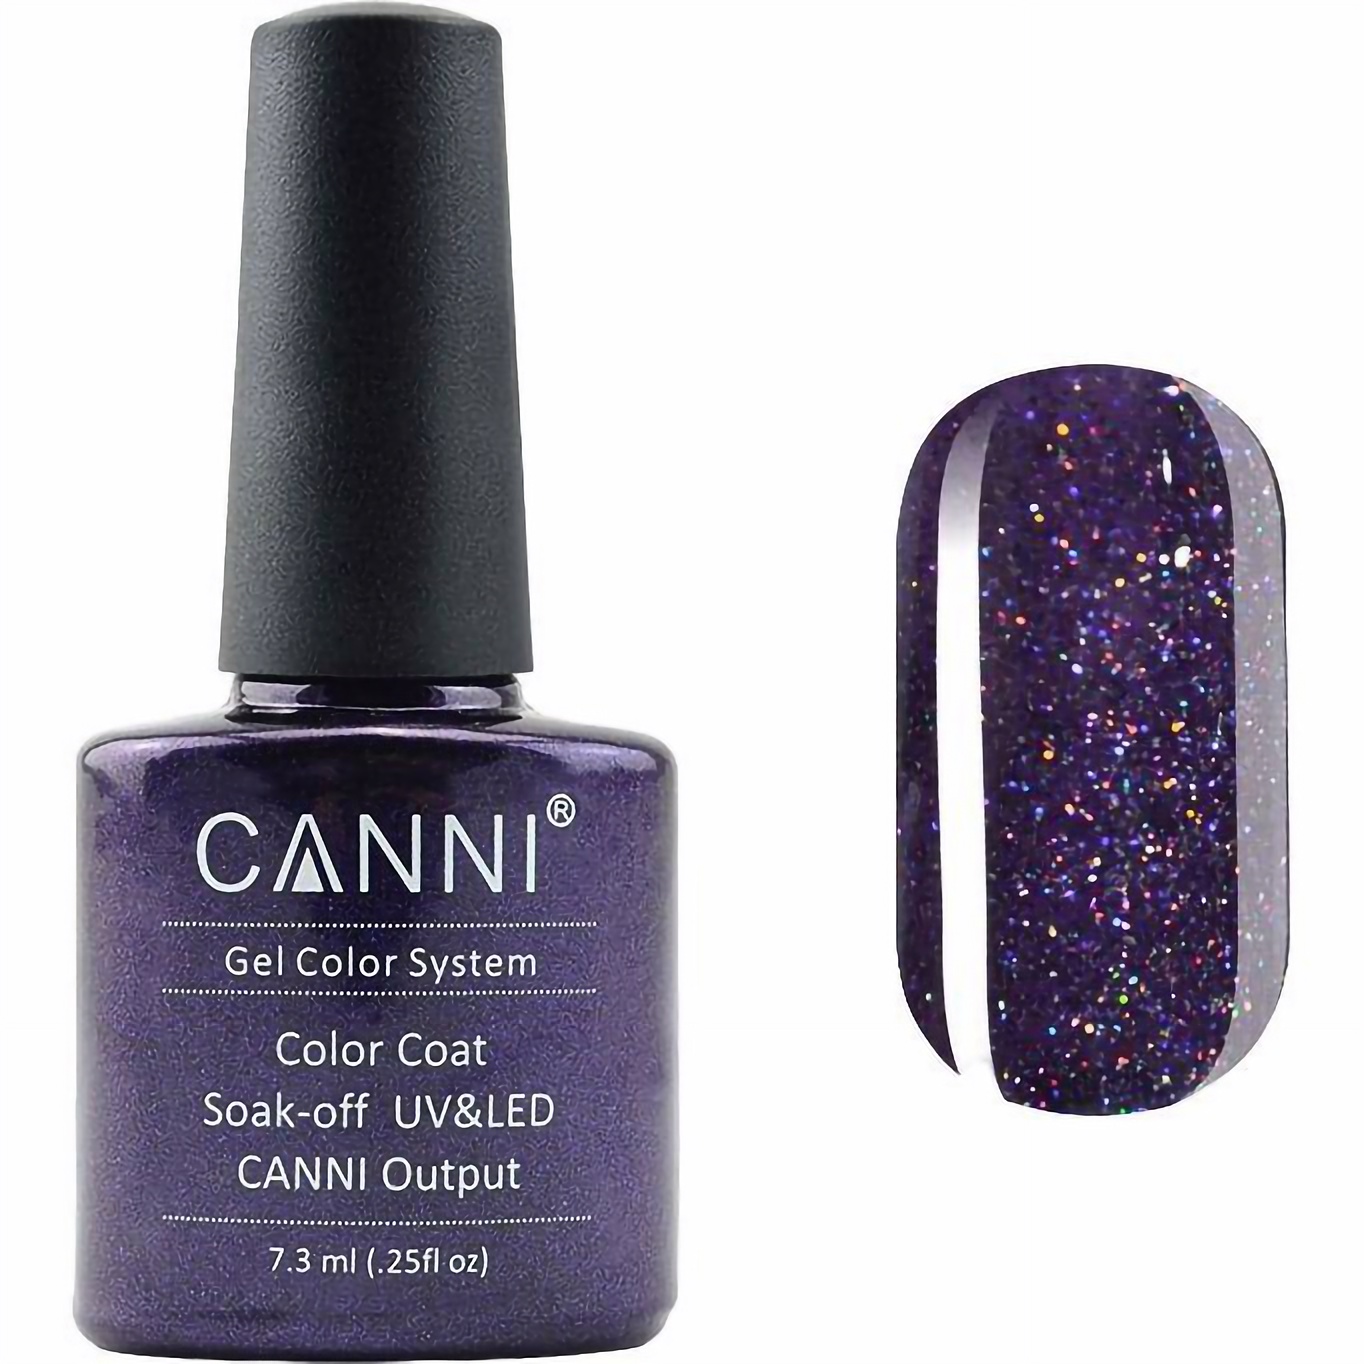 Гель-лак Canni Color Coat Soak-off UV&LED 190 сливово-фіолетовий з голографічним мікроблиском 7.3 мл - фото 1